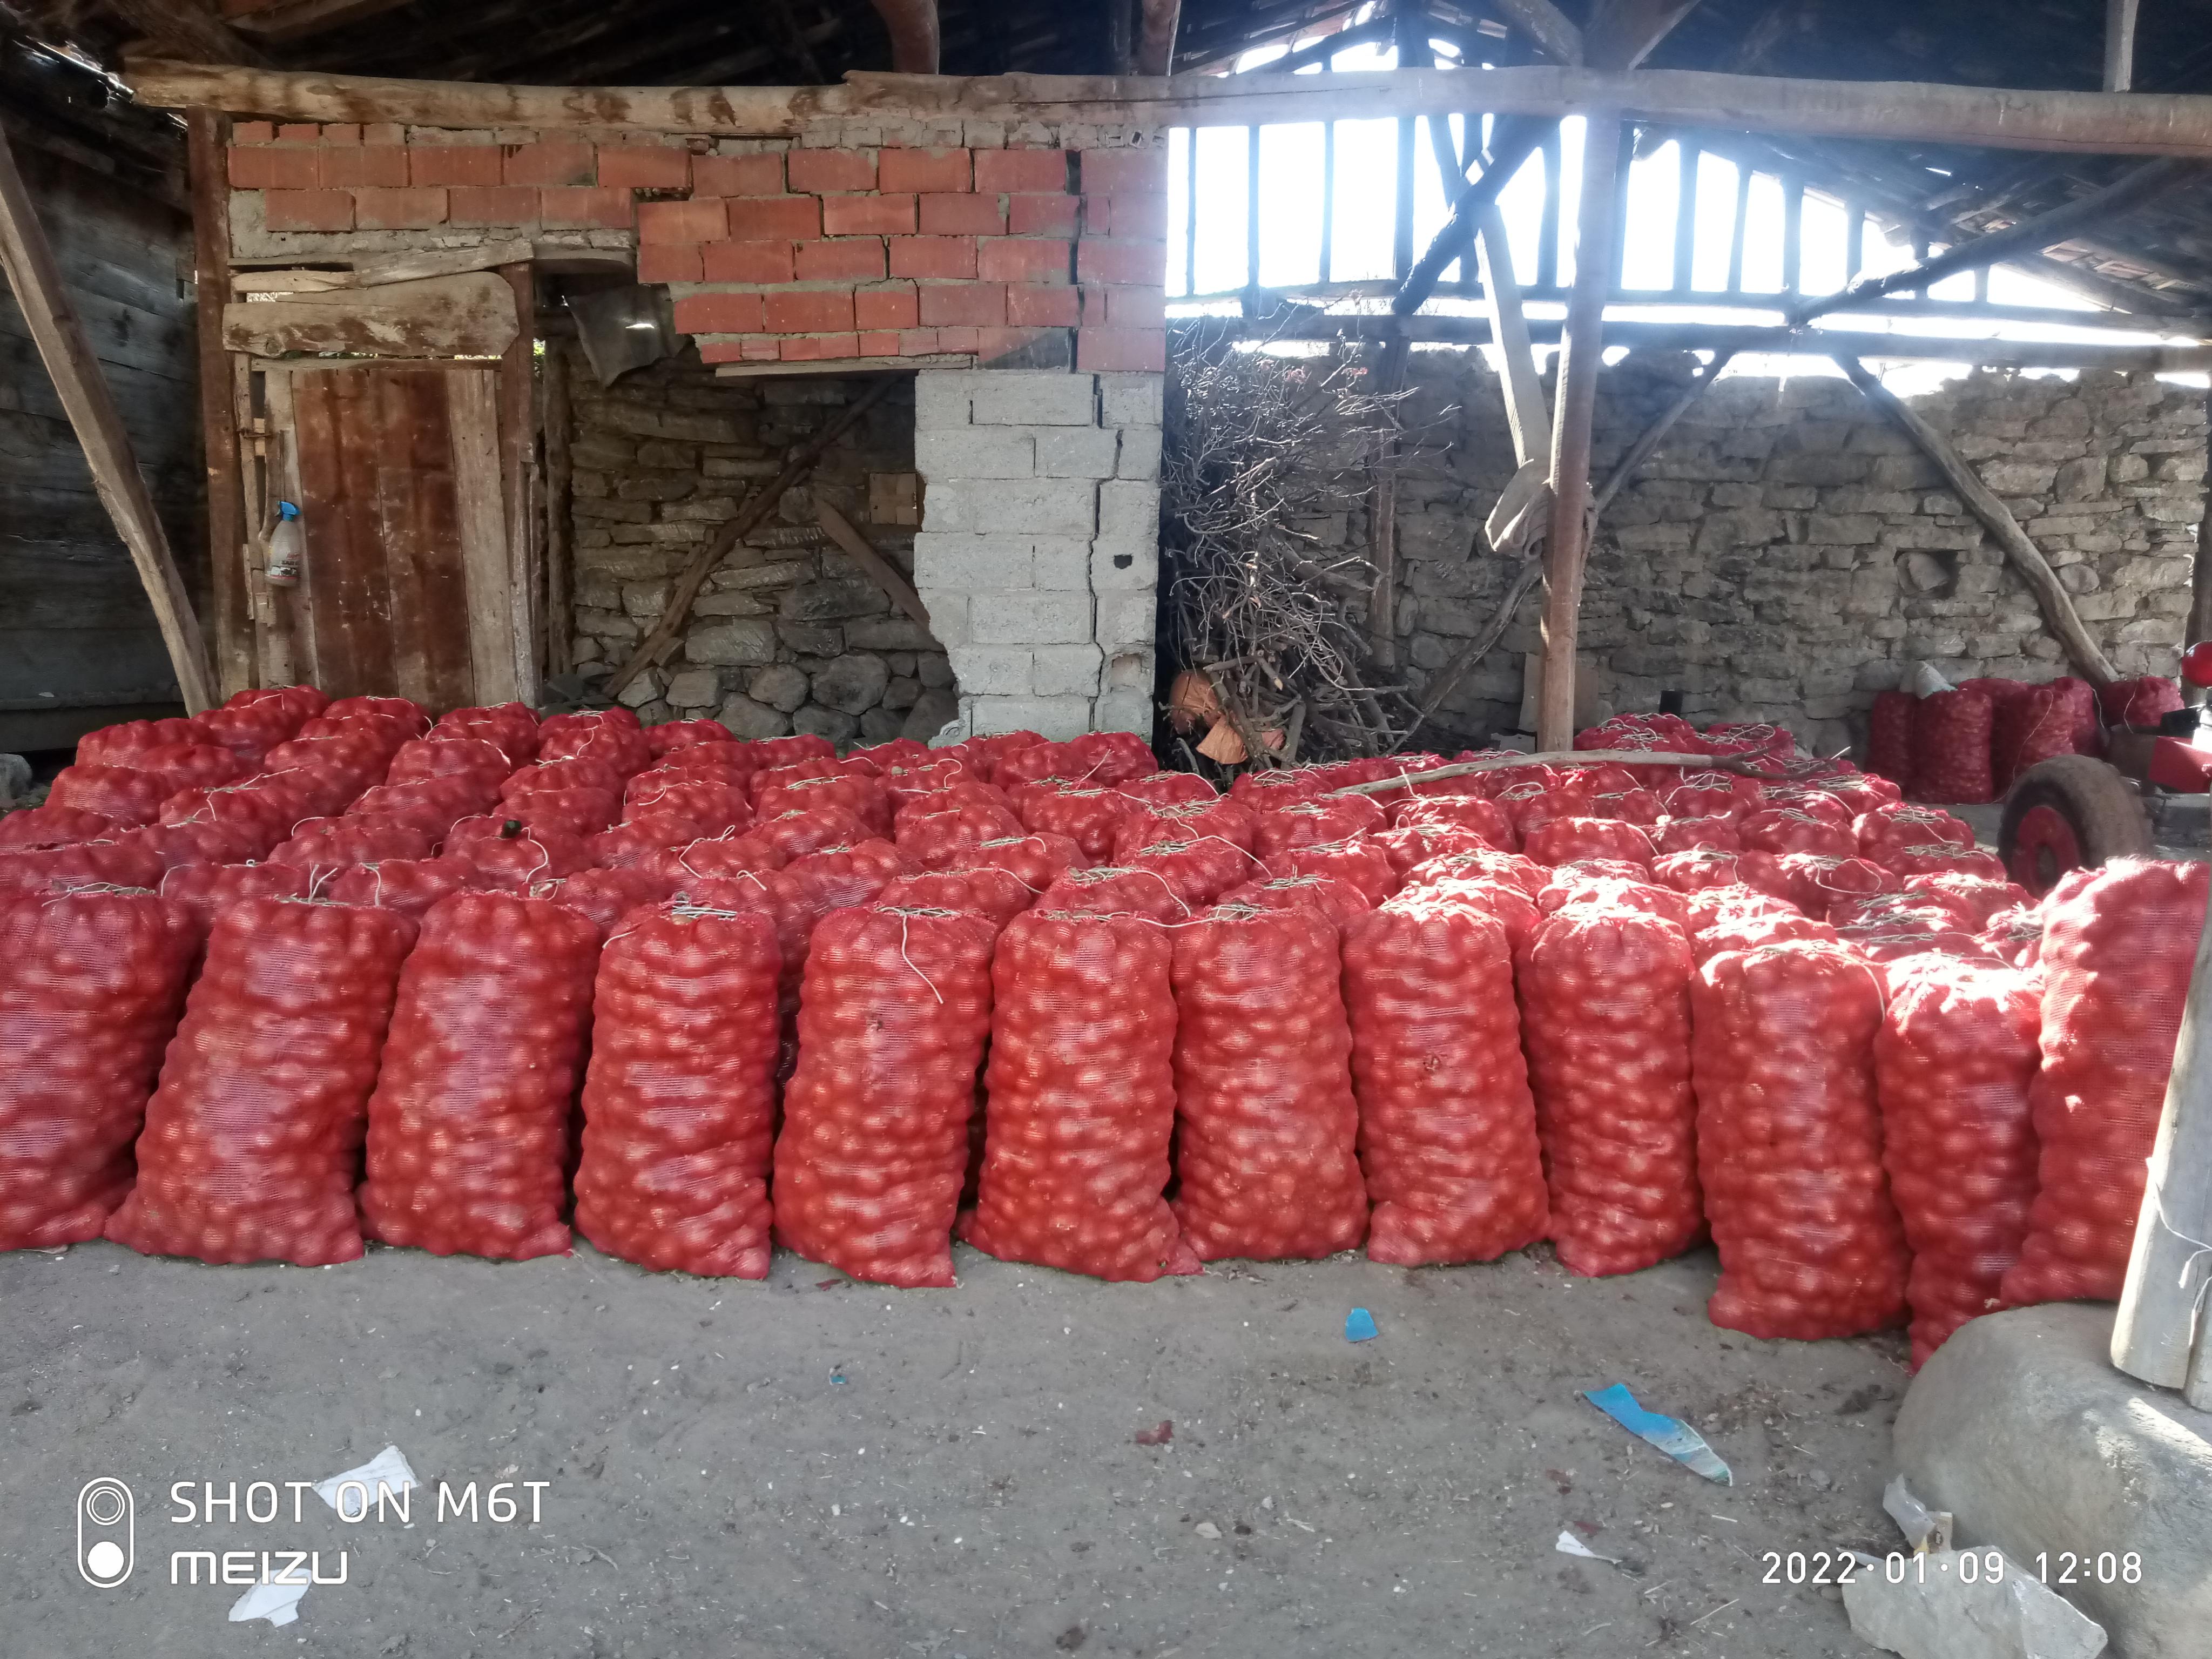 Kuru Soğan - Üretici Mehmet Ali Findik 1 tl fiyat ile 4.500 kilogram kuru soğan  satmak istiyor